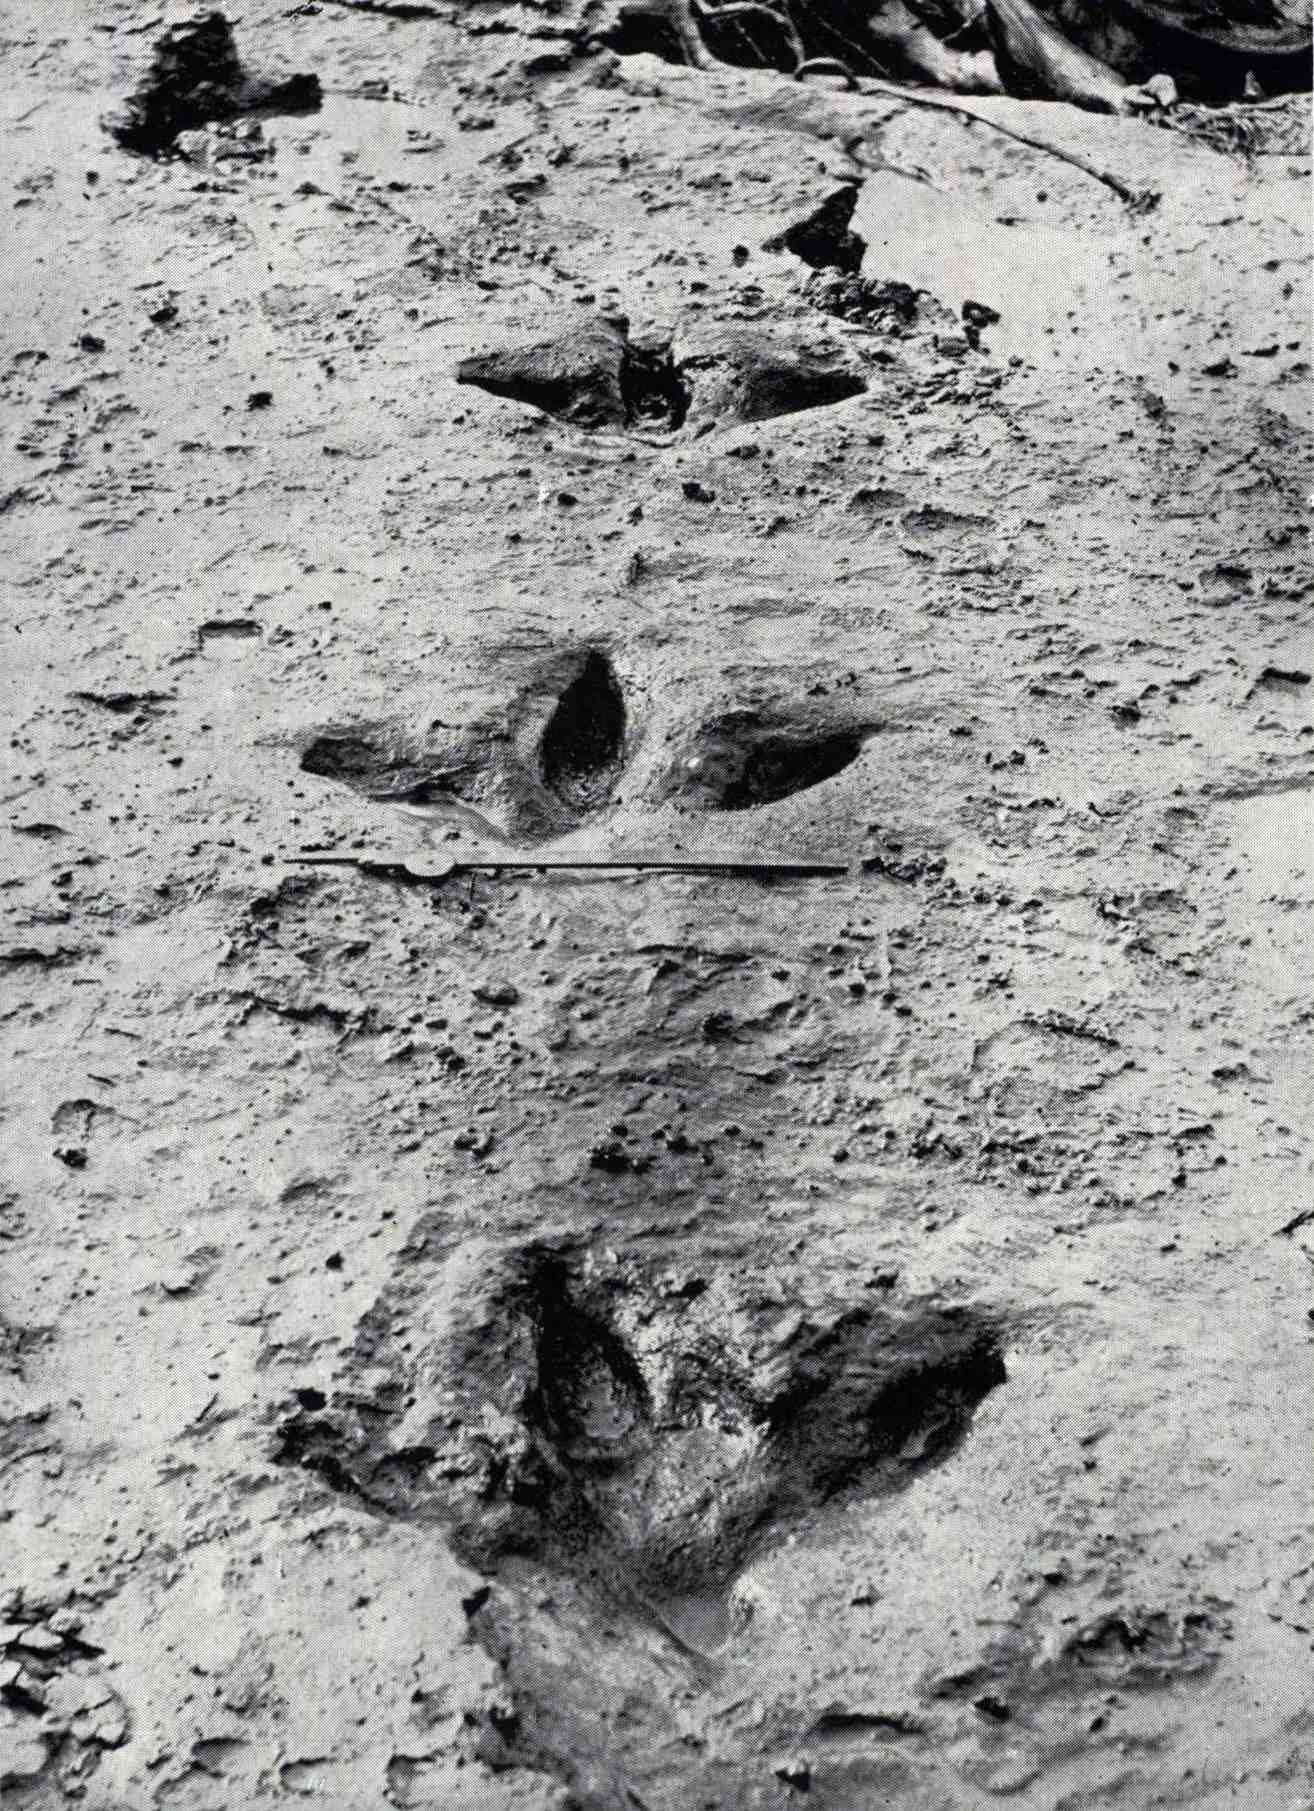 این ردپاهای Dinornis robustus در آگوست 1911 هنگامی که سیل در رودخانه Manawatū خاک رس آبی را که آنها را پوشانده و حفظ کرده بود، آشکار شد. آن‌ها نشان می‌دهند که موآ دارای سه انگشت جلویی قوی و بر خلاف بسیاری از ساقه‌های دیگر، یک انگشت کوچک در عقب است.